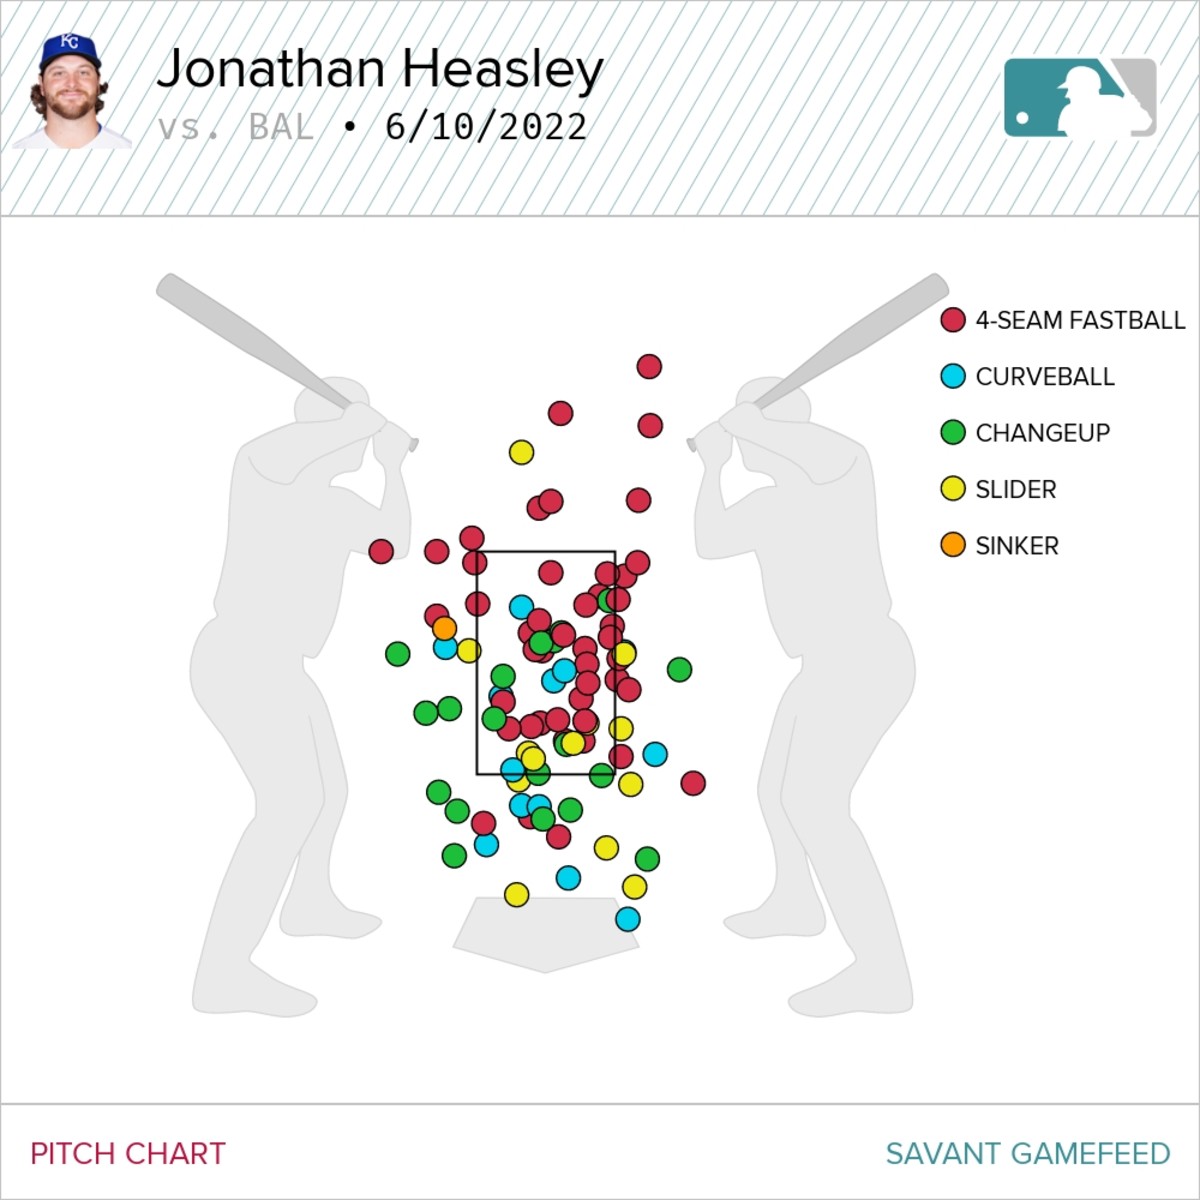 Jonathan Heasley pitch chart 06/10/22, via Baseball Savant.